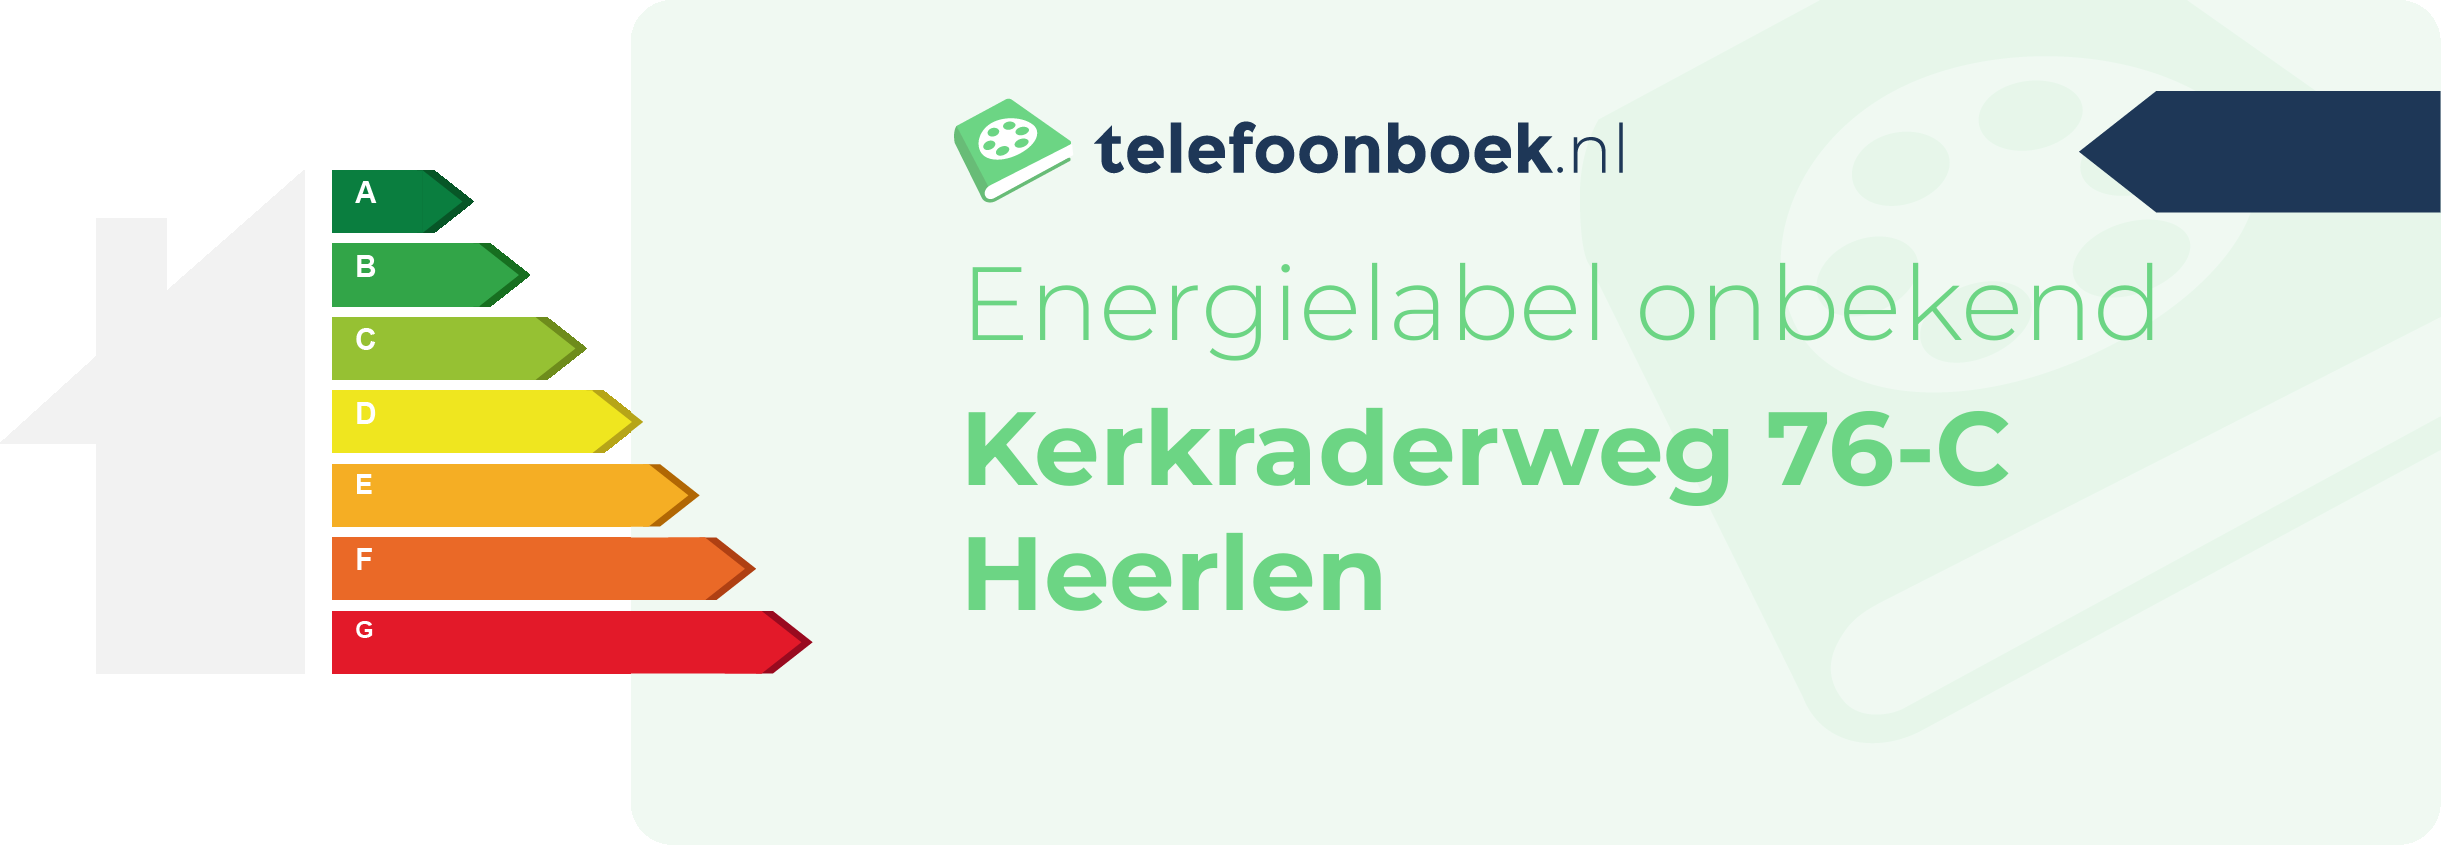 Energielabel Kerkraderweg 76-C Heerlen